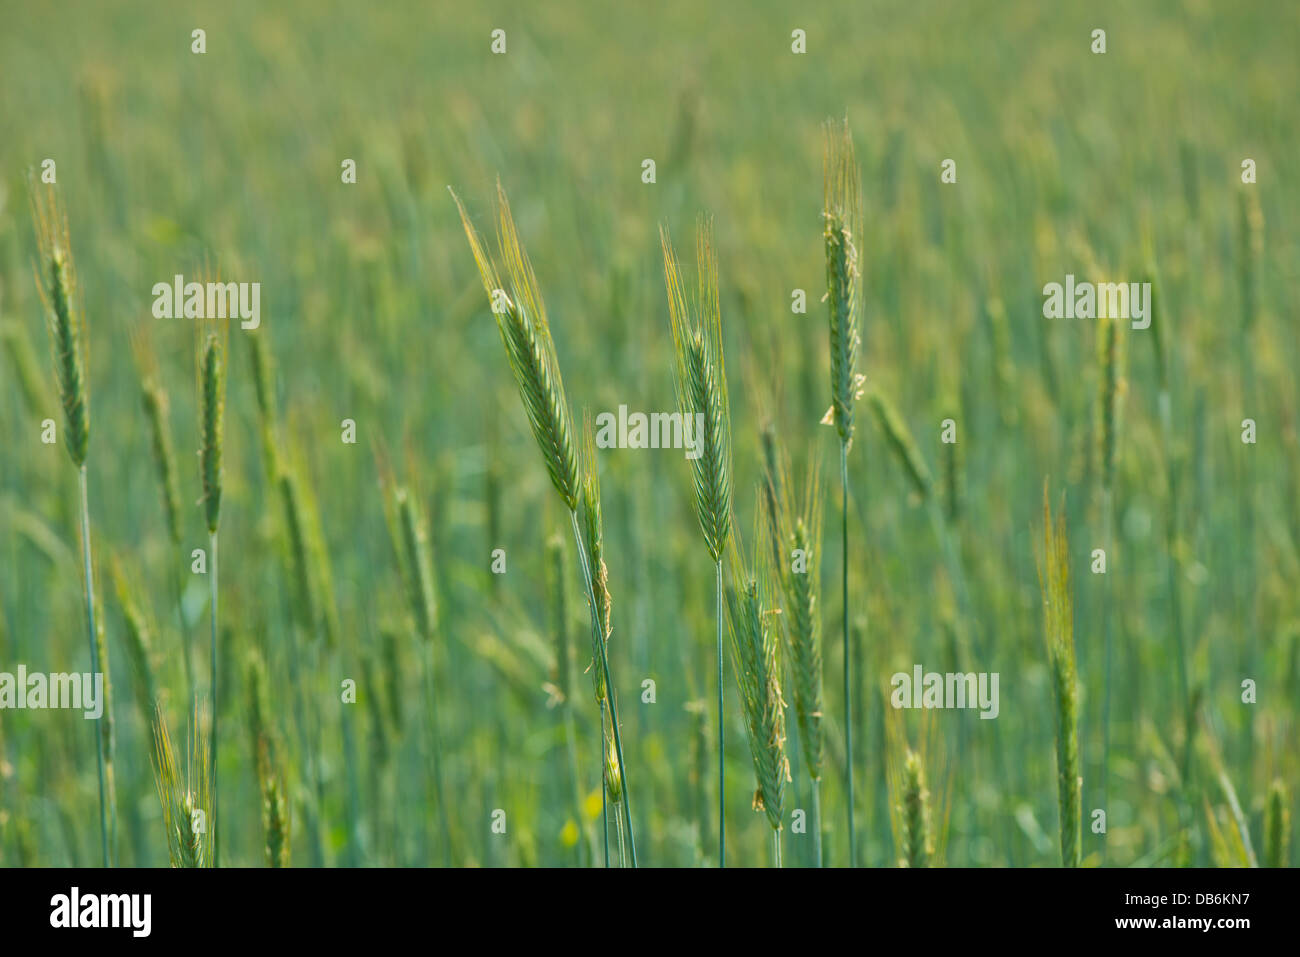 Vastos campos de cultivos de trigo verde saludable maduración Foto de stock